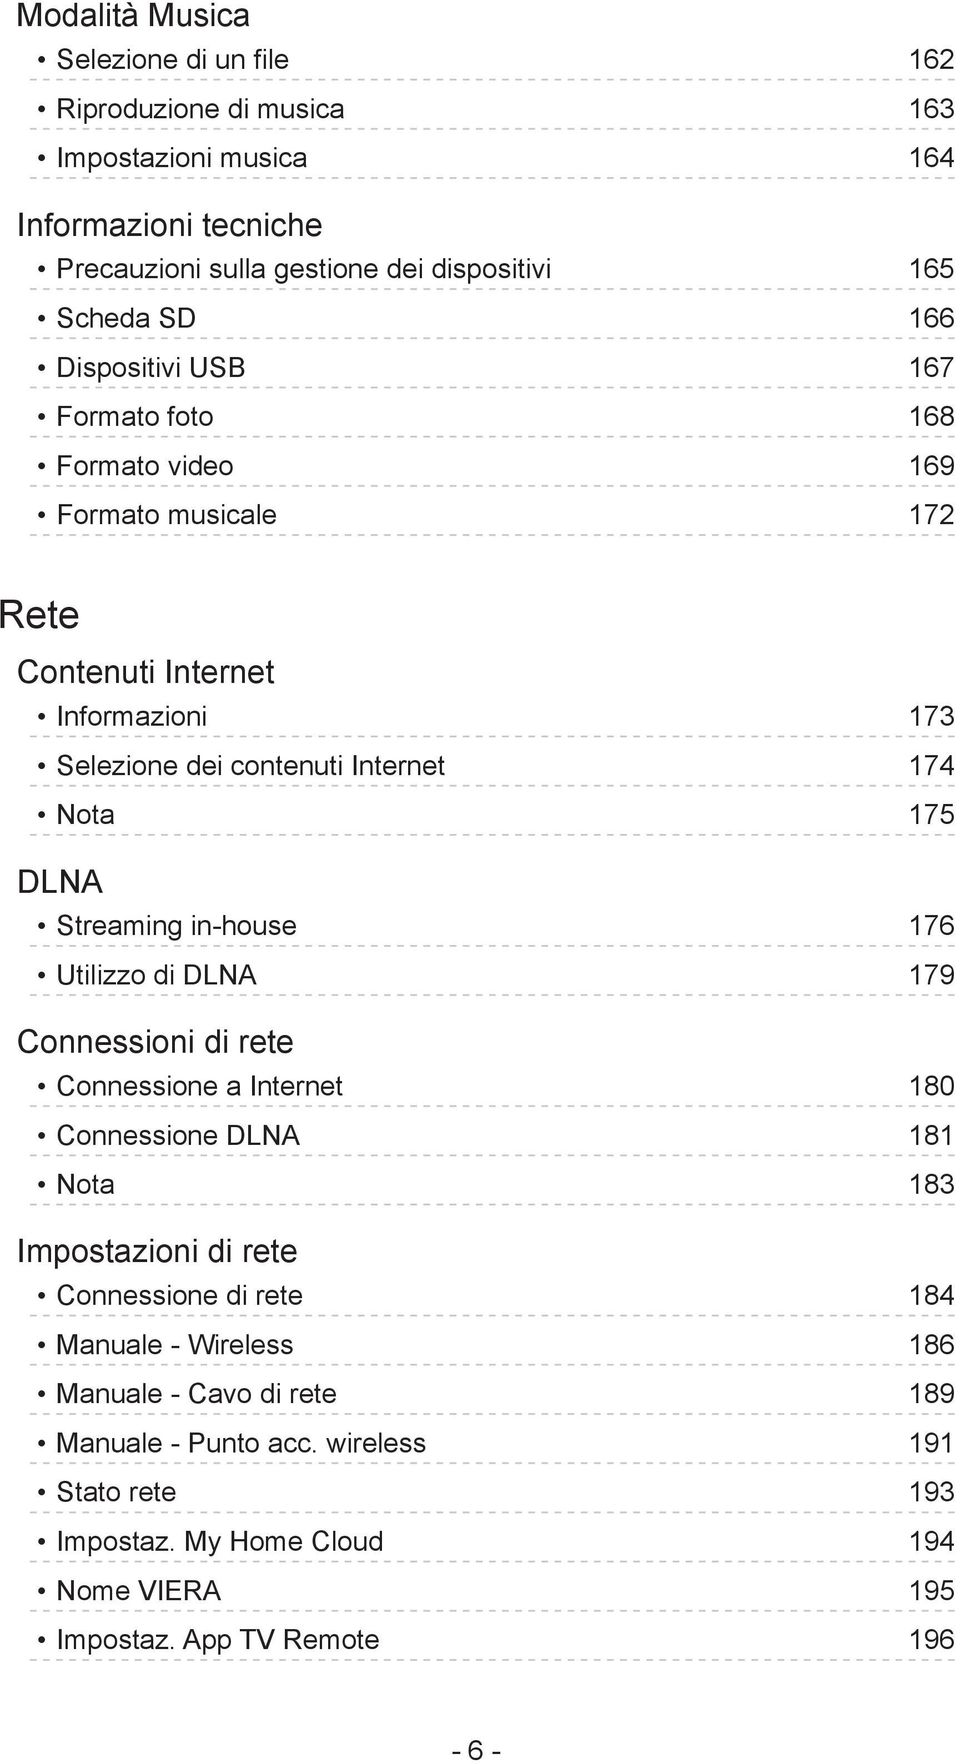 DLNA Streaming in-house 176 Utilizzo di DLNA 179 Connessioni di rete Connessione a Internet 180 Connessione DLNA 181 Nota 183 Impostazioni di rete Connessione di rete 184